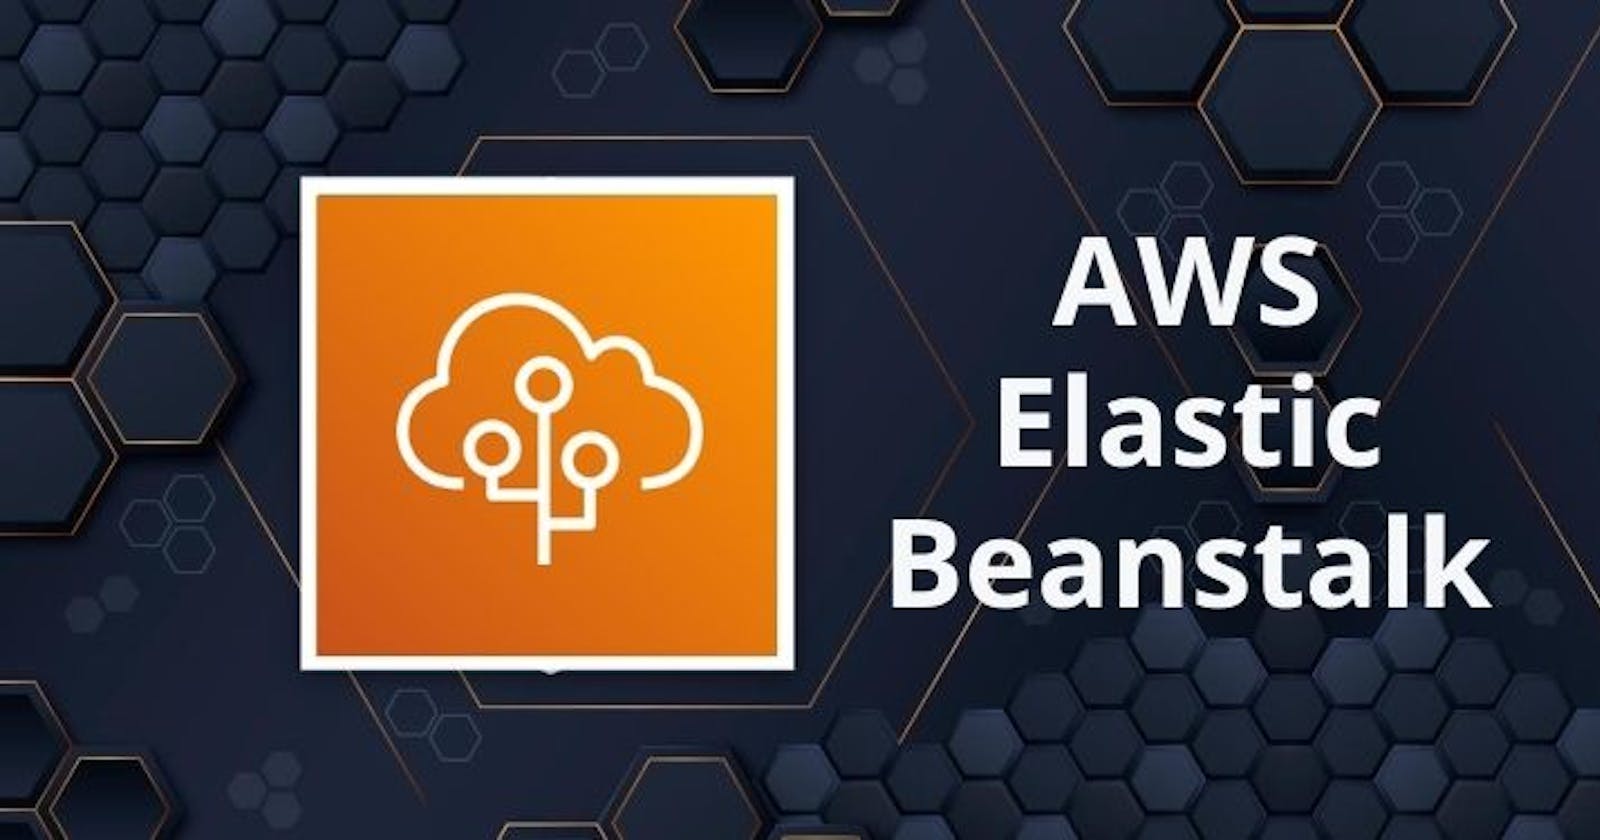 Day 47 - AWS Elastic Beanstalk